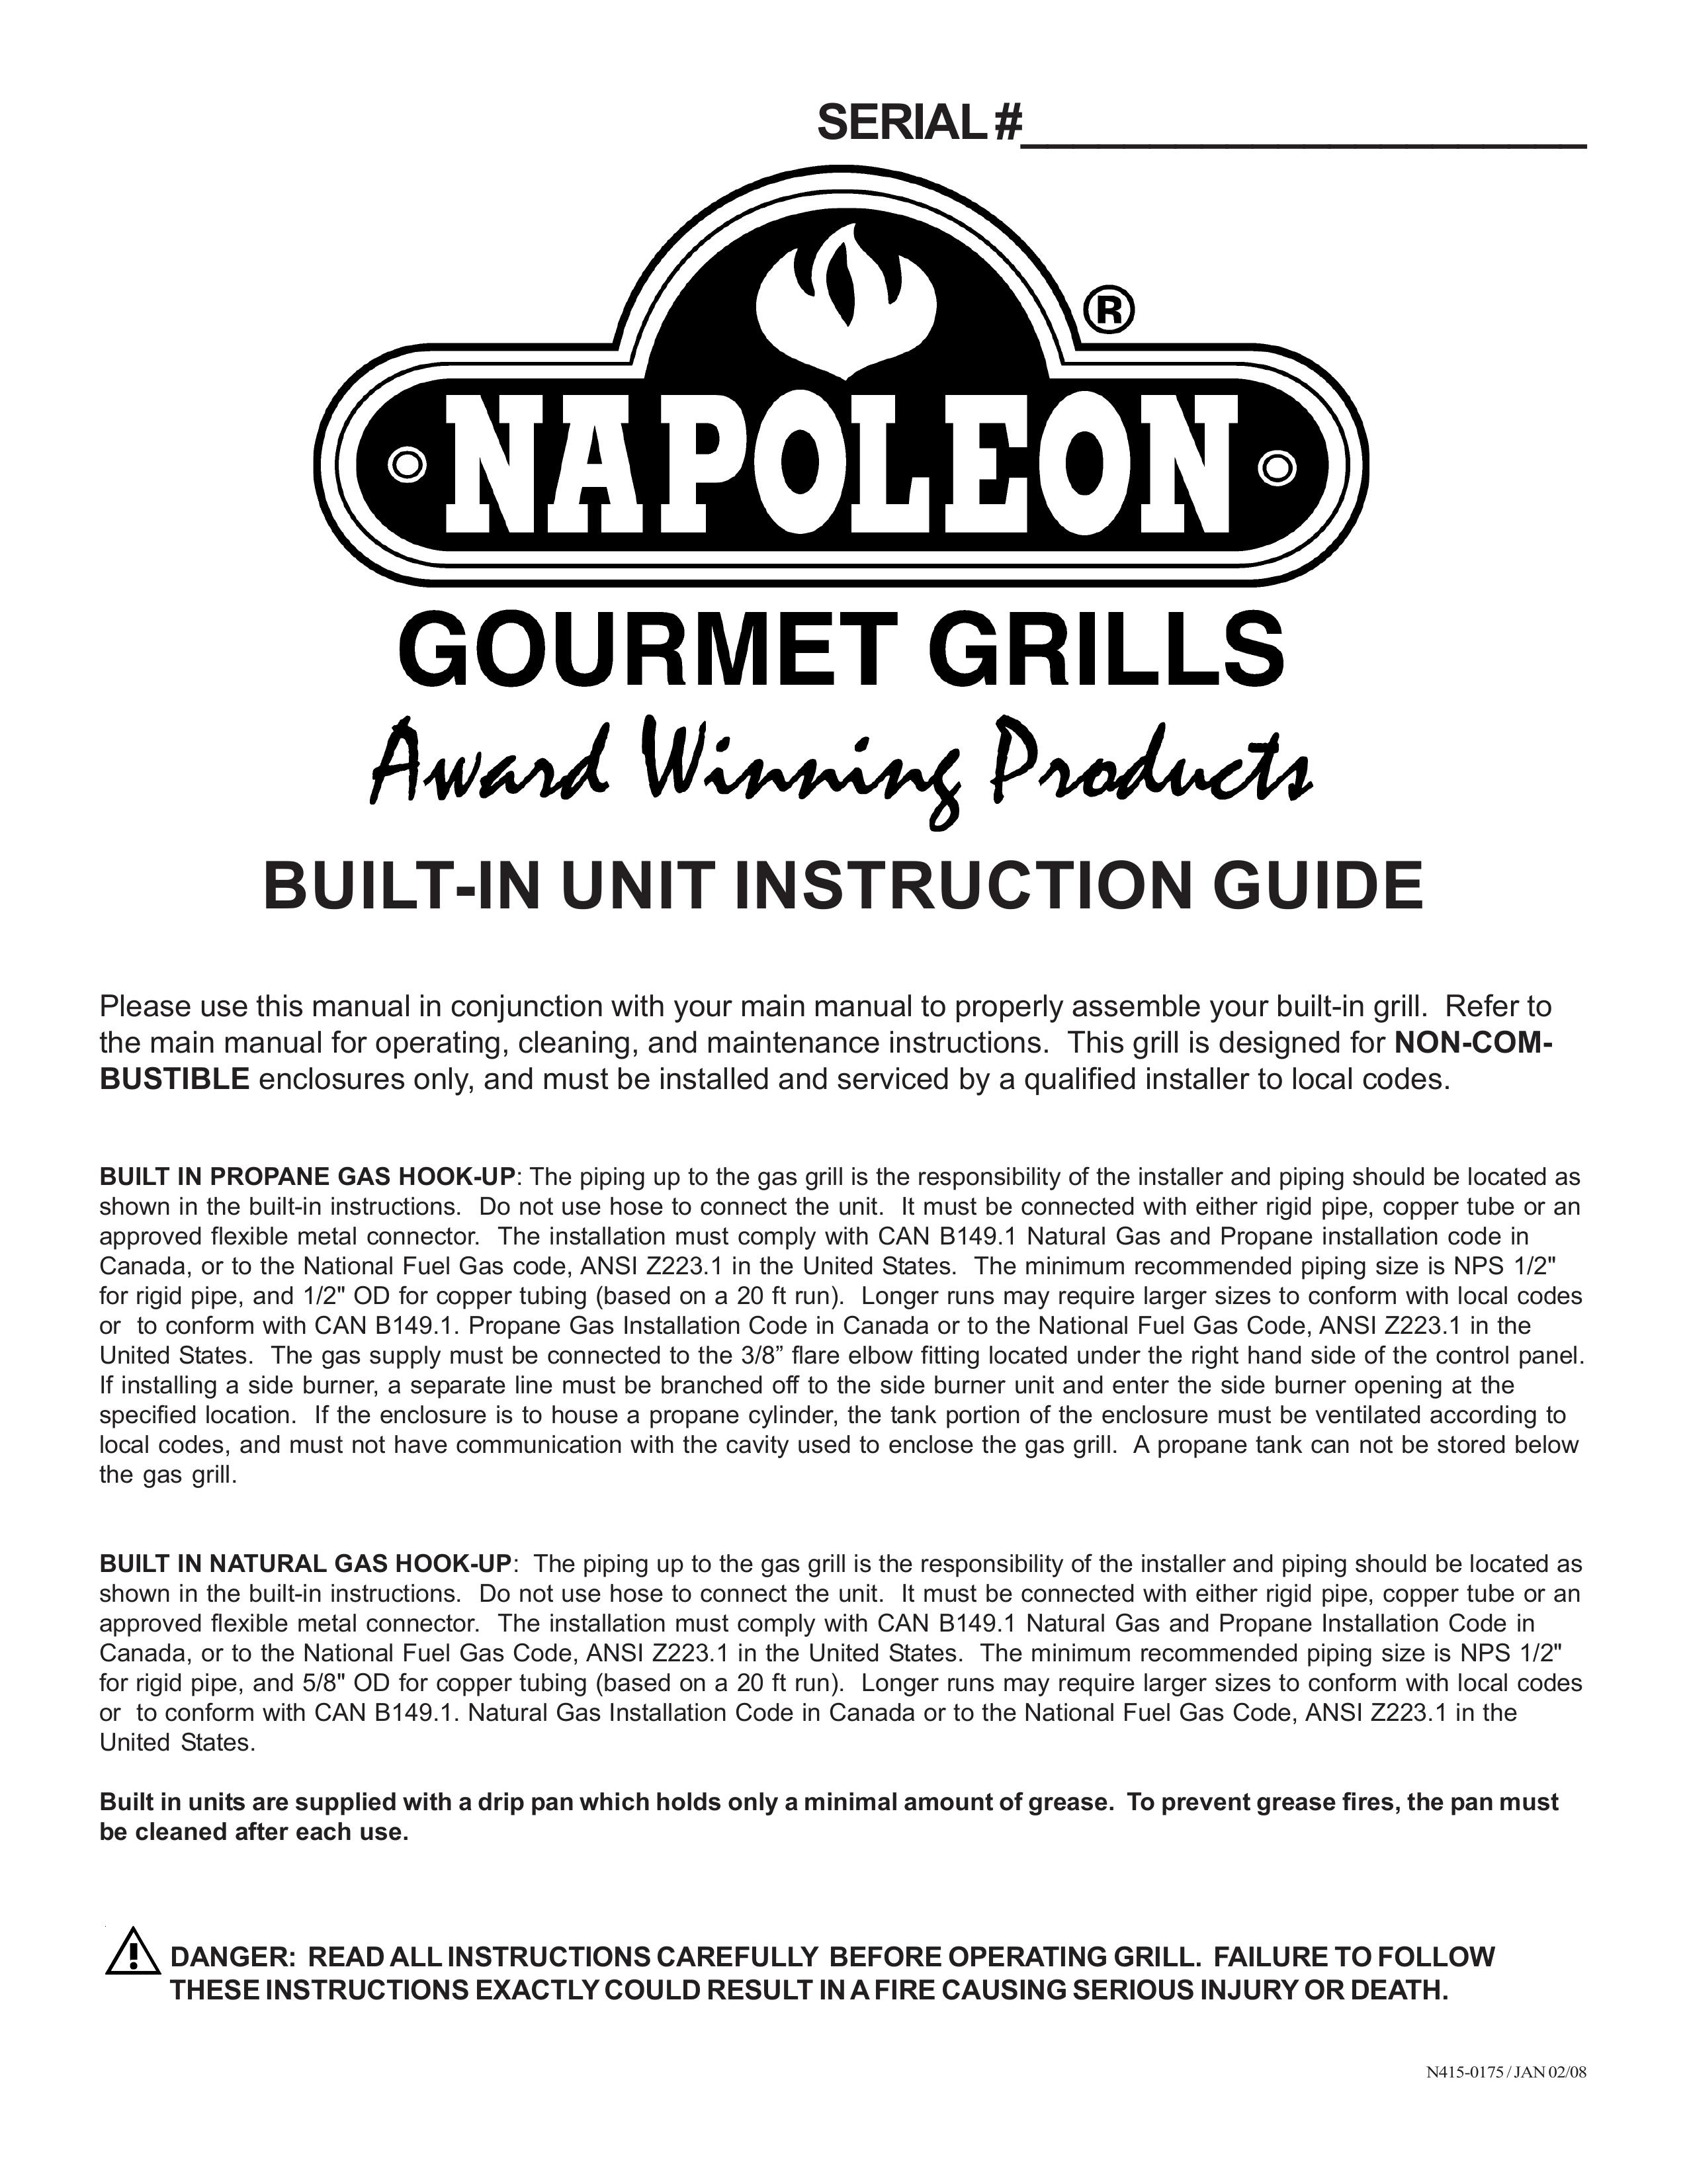 Napoleon Grills BIU405 Gas Grill User Manual